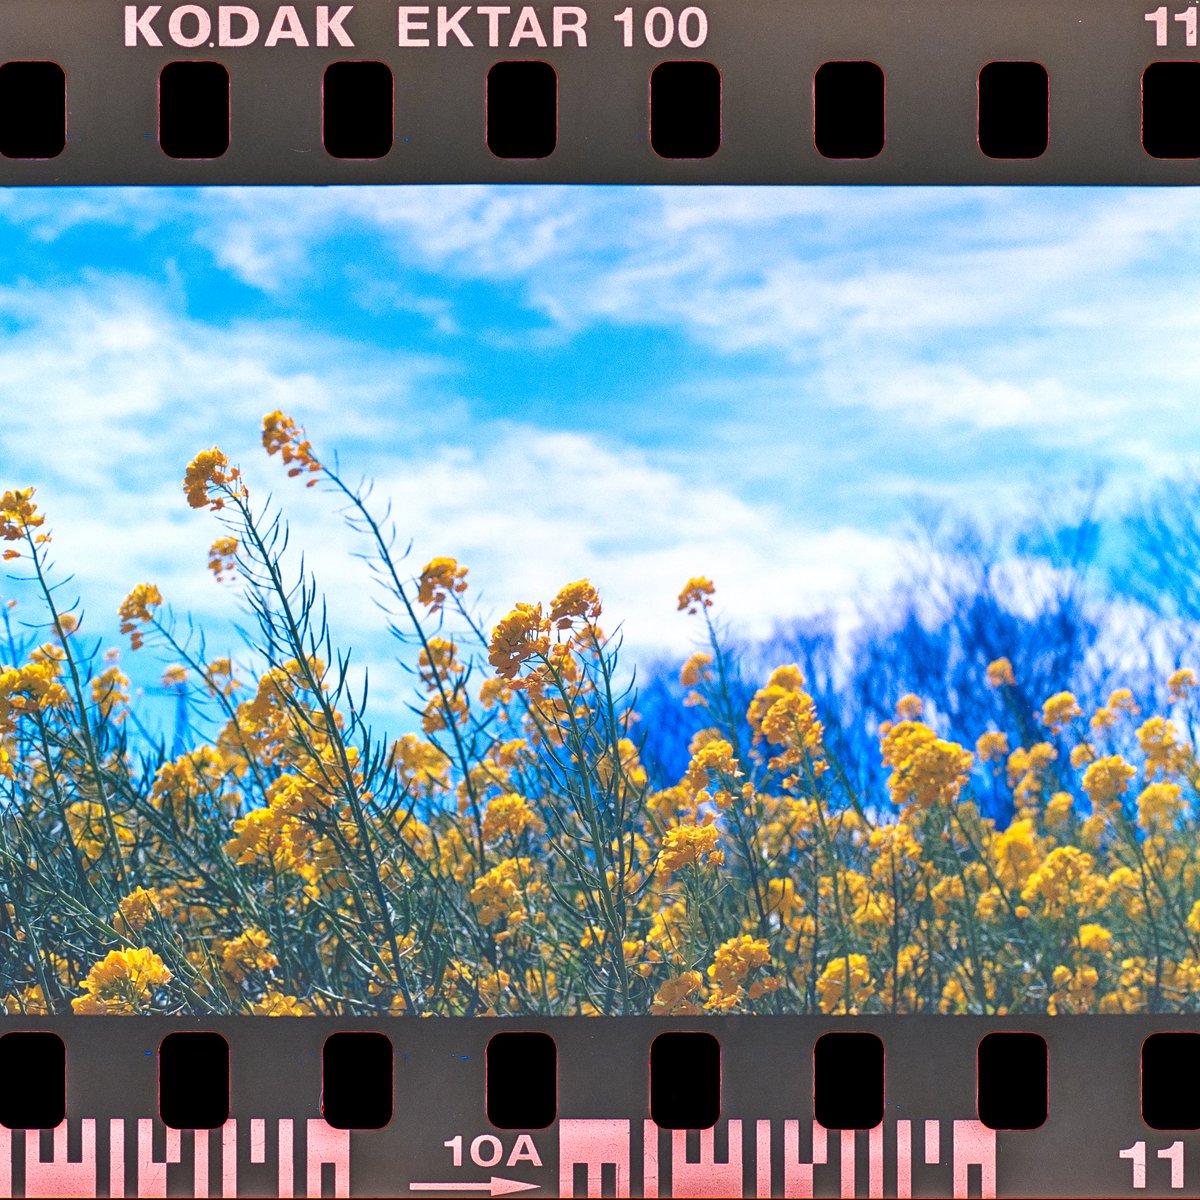 花摘み
Canon F-1 × KODAK GOLD 200

#film #canon #canonf1 #filmcamera #135mm #135mmfilm #kodak #kodakgold200 #フィルムカメラ #フィルム  #生活とフィルム #カメラのある生活 #フィルム写真 #街撮り #キリトリセカイ #filmphotography #filmwave